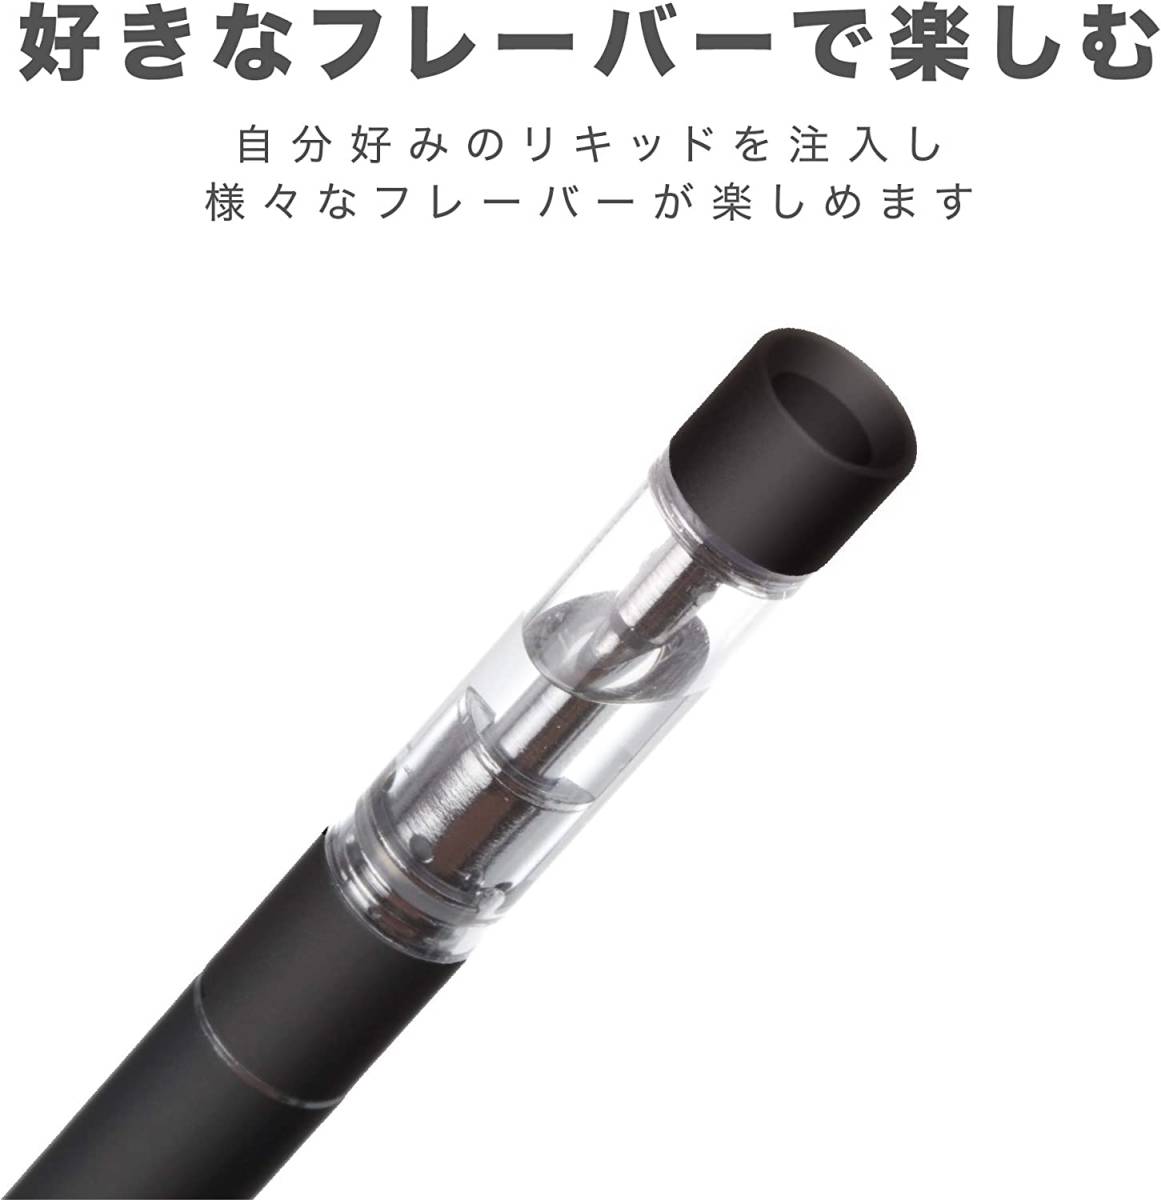 新品 送料無 11箱 C-Tec DUO 交換用アトマイザーセット たばこカプセル対応 日本製ハードメンソールリキッド 電子タバコ シーテック デュオ